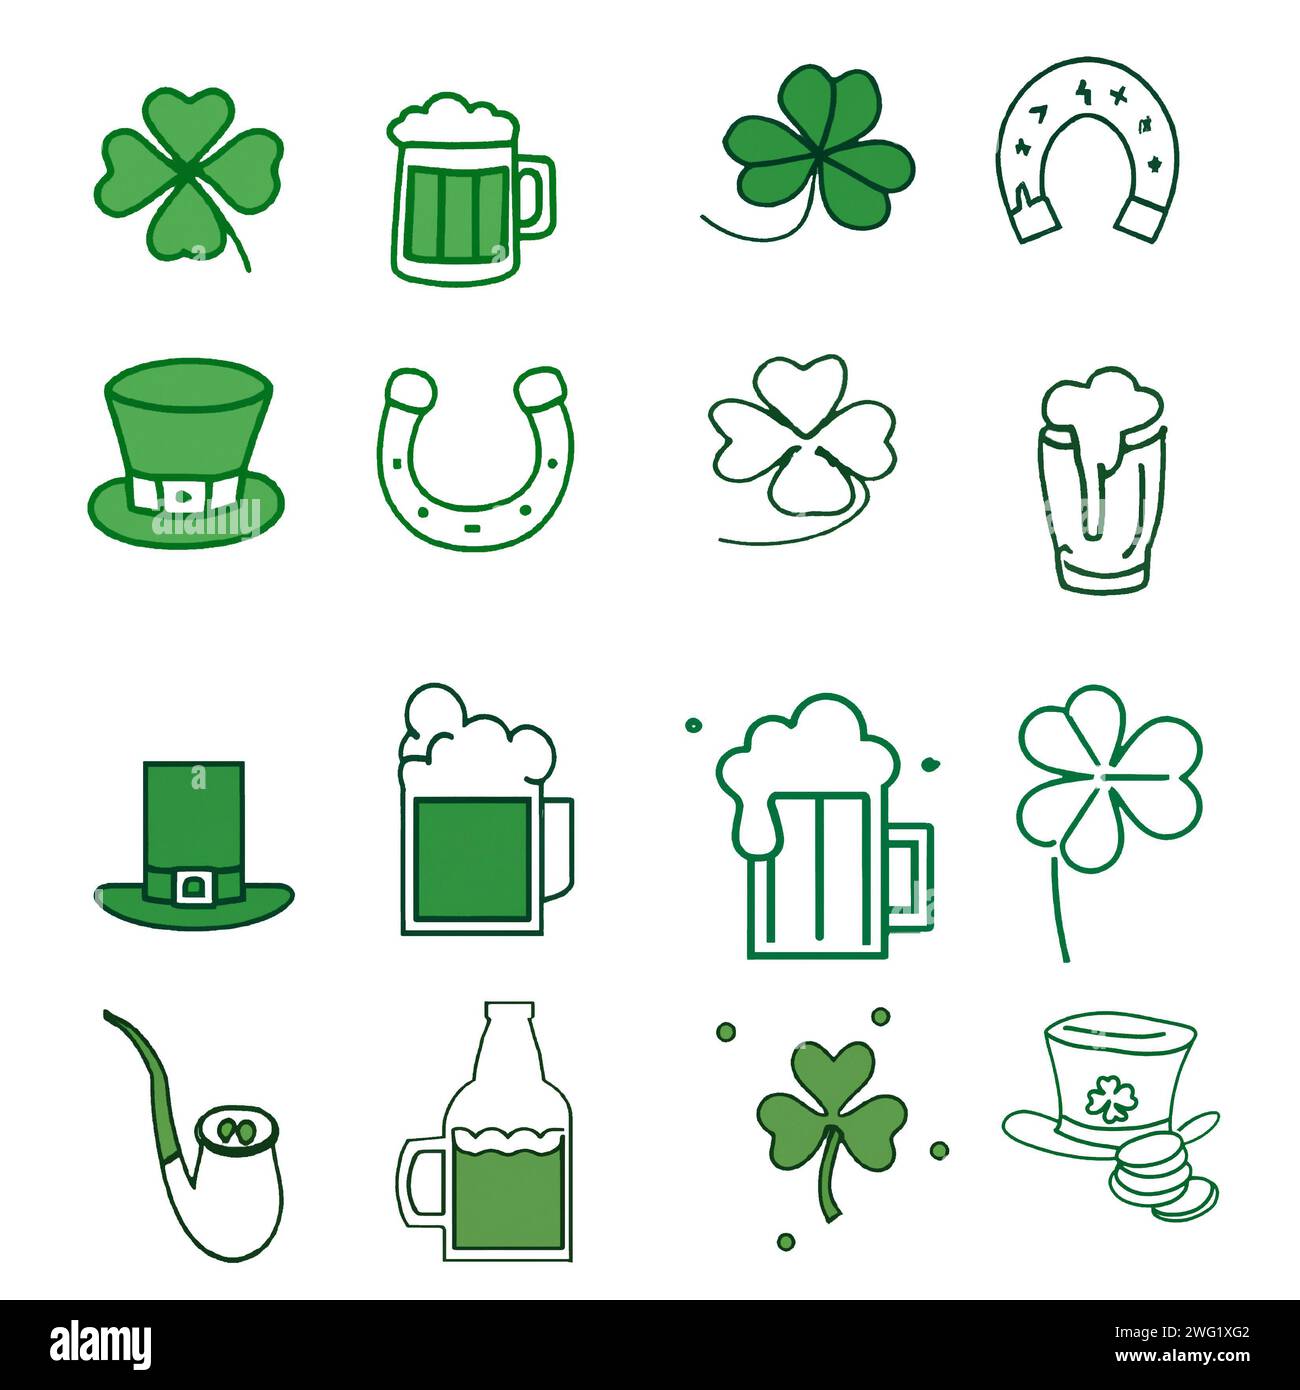 Logo de la Saint Patrick groupe d'icônes 16 différent Banque D'Images